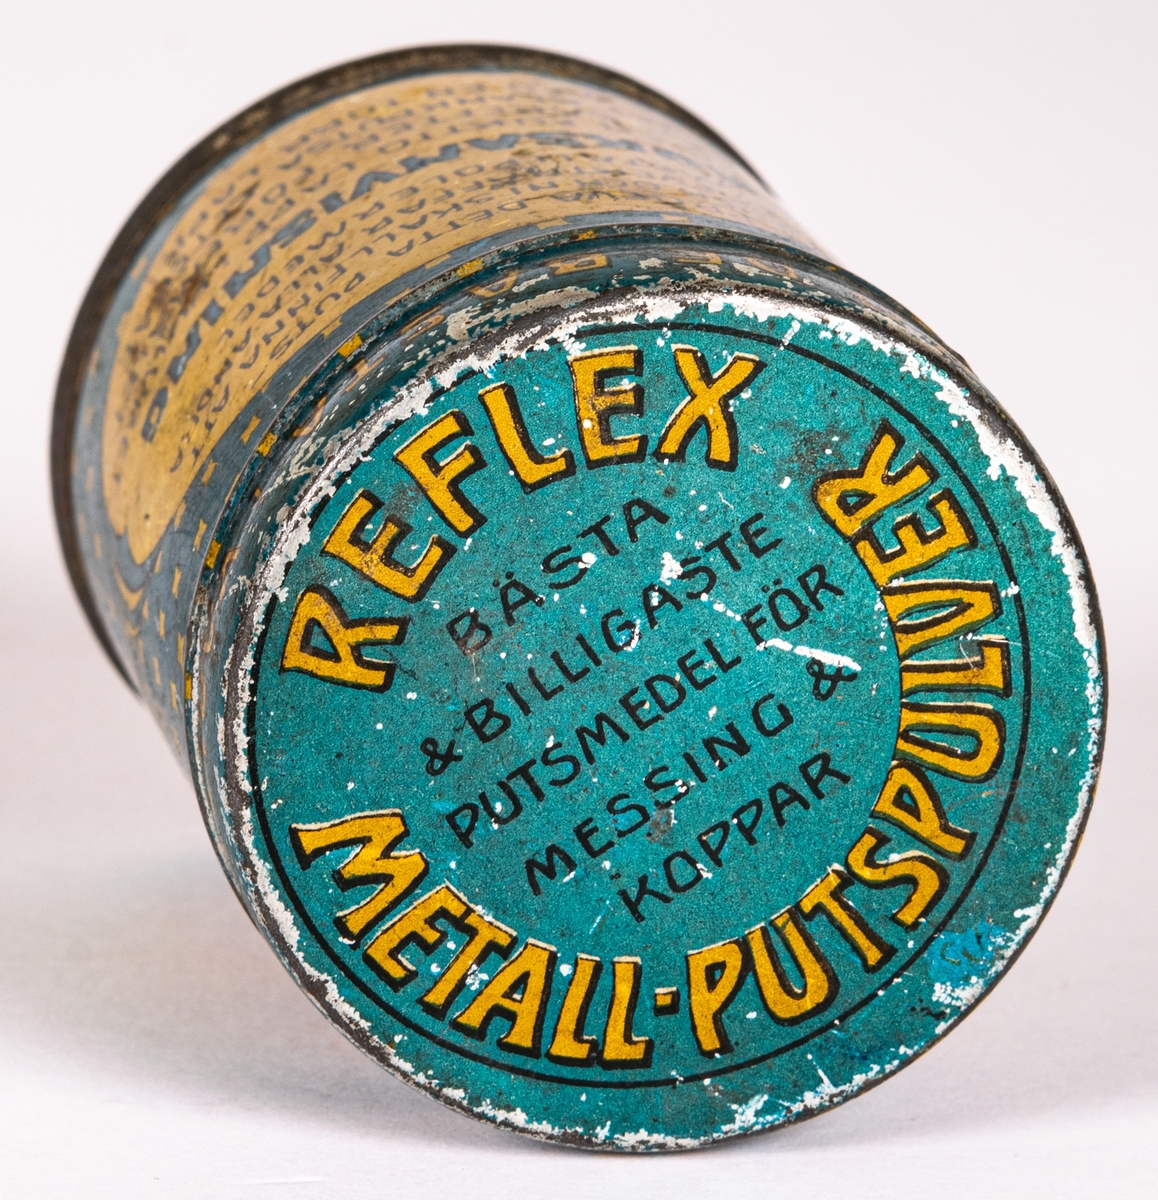 Plåtburk med blå  och gult tryck. Har innehållit Reflex-metall-Putspulver. Från B. Södergrens kemiska fabrik.